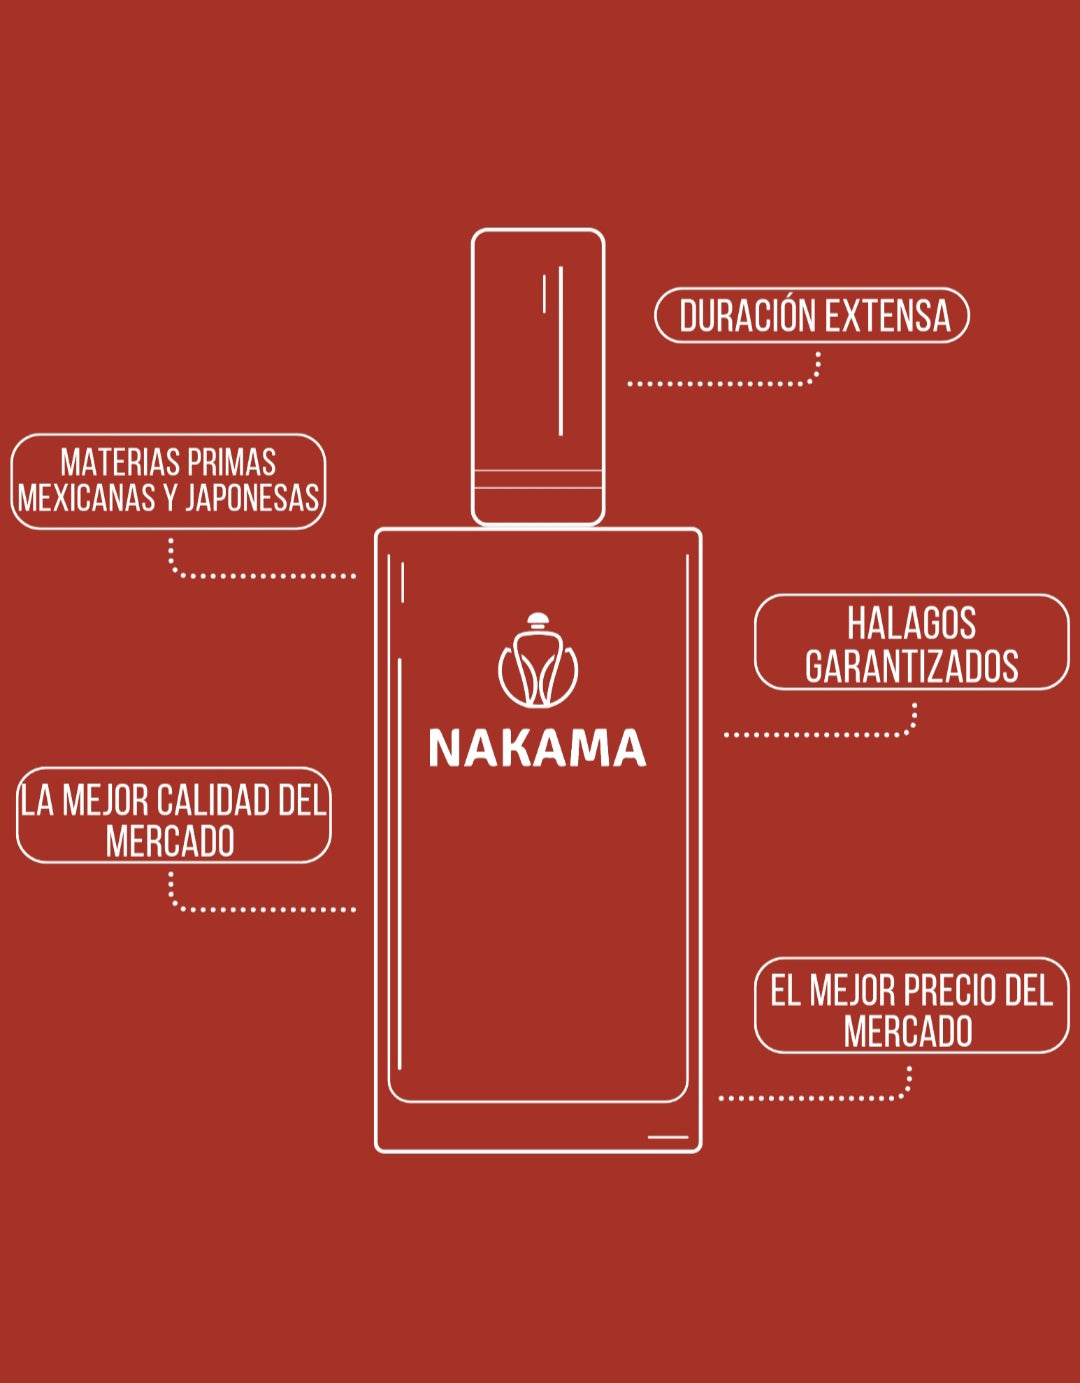 VERSION NAKAMA DE BAMBOO - GUCCI - DAMA